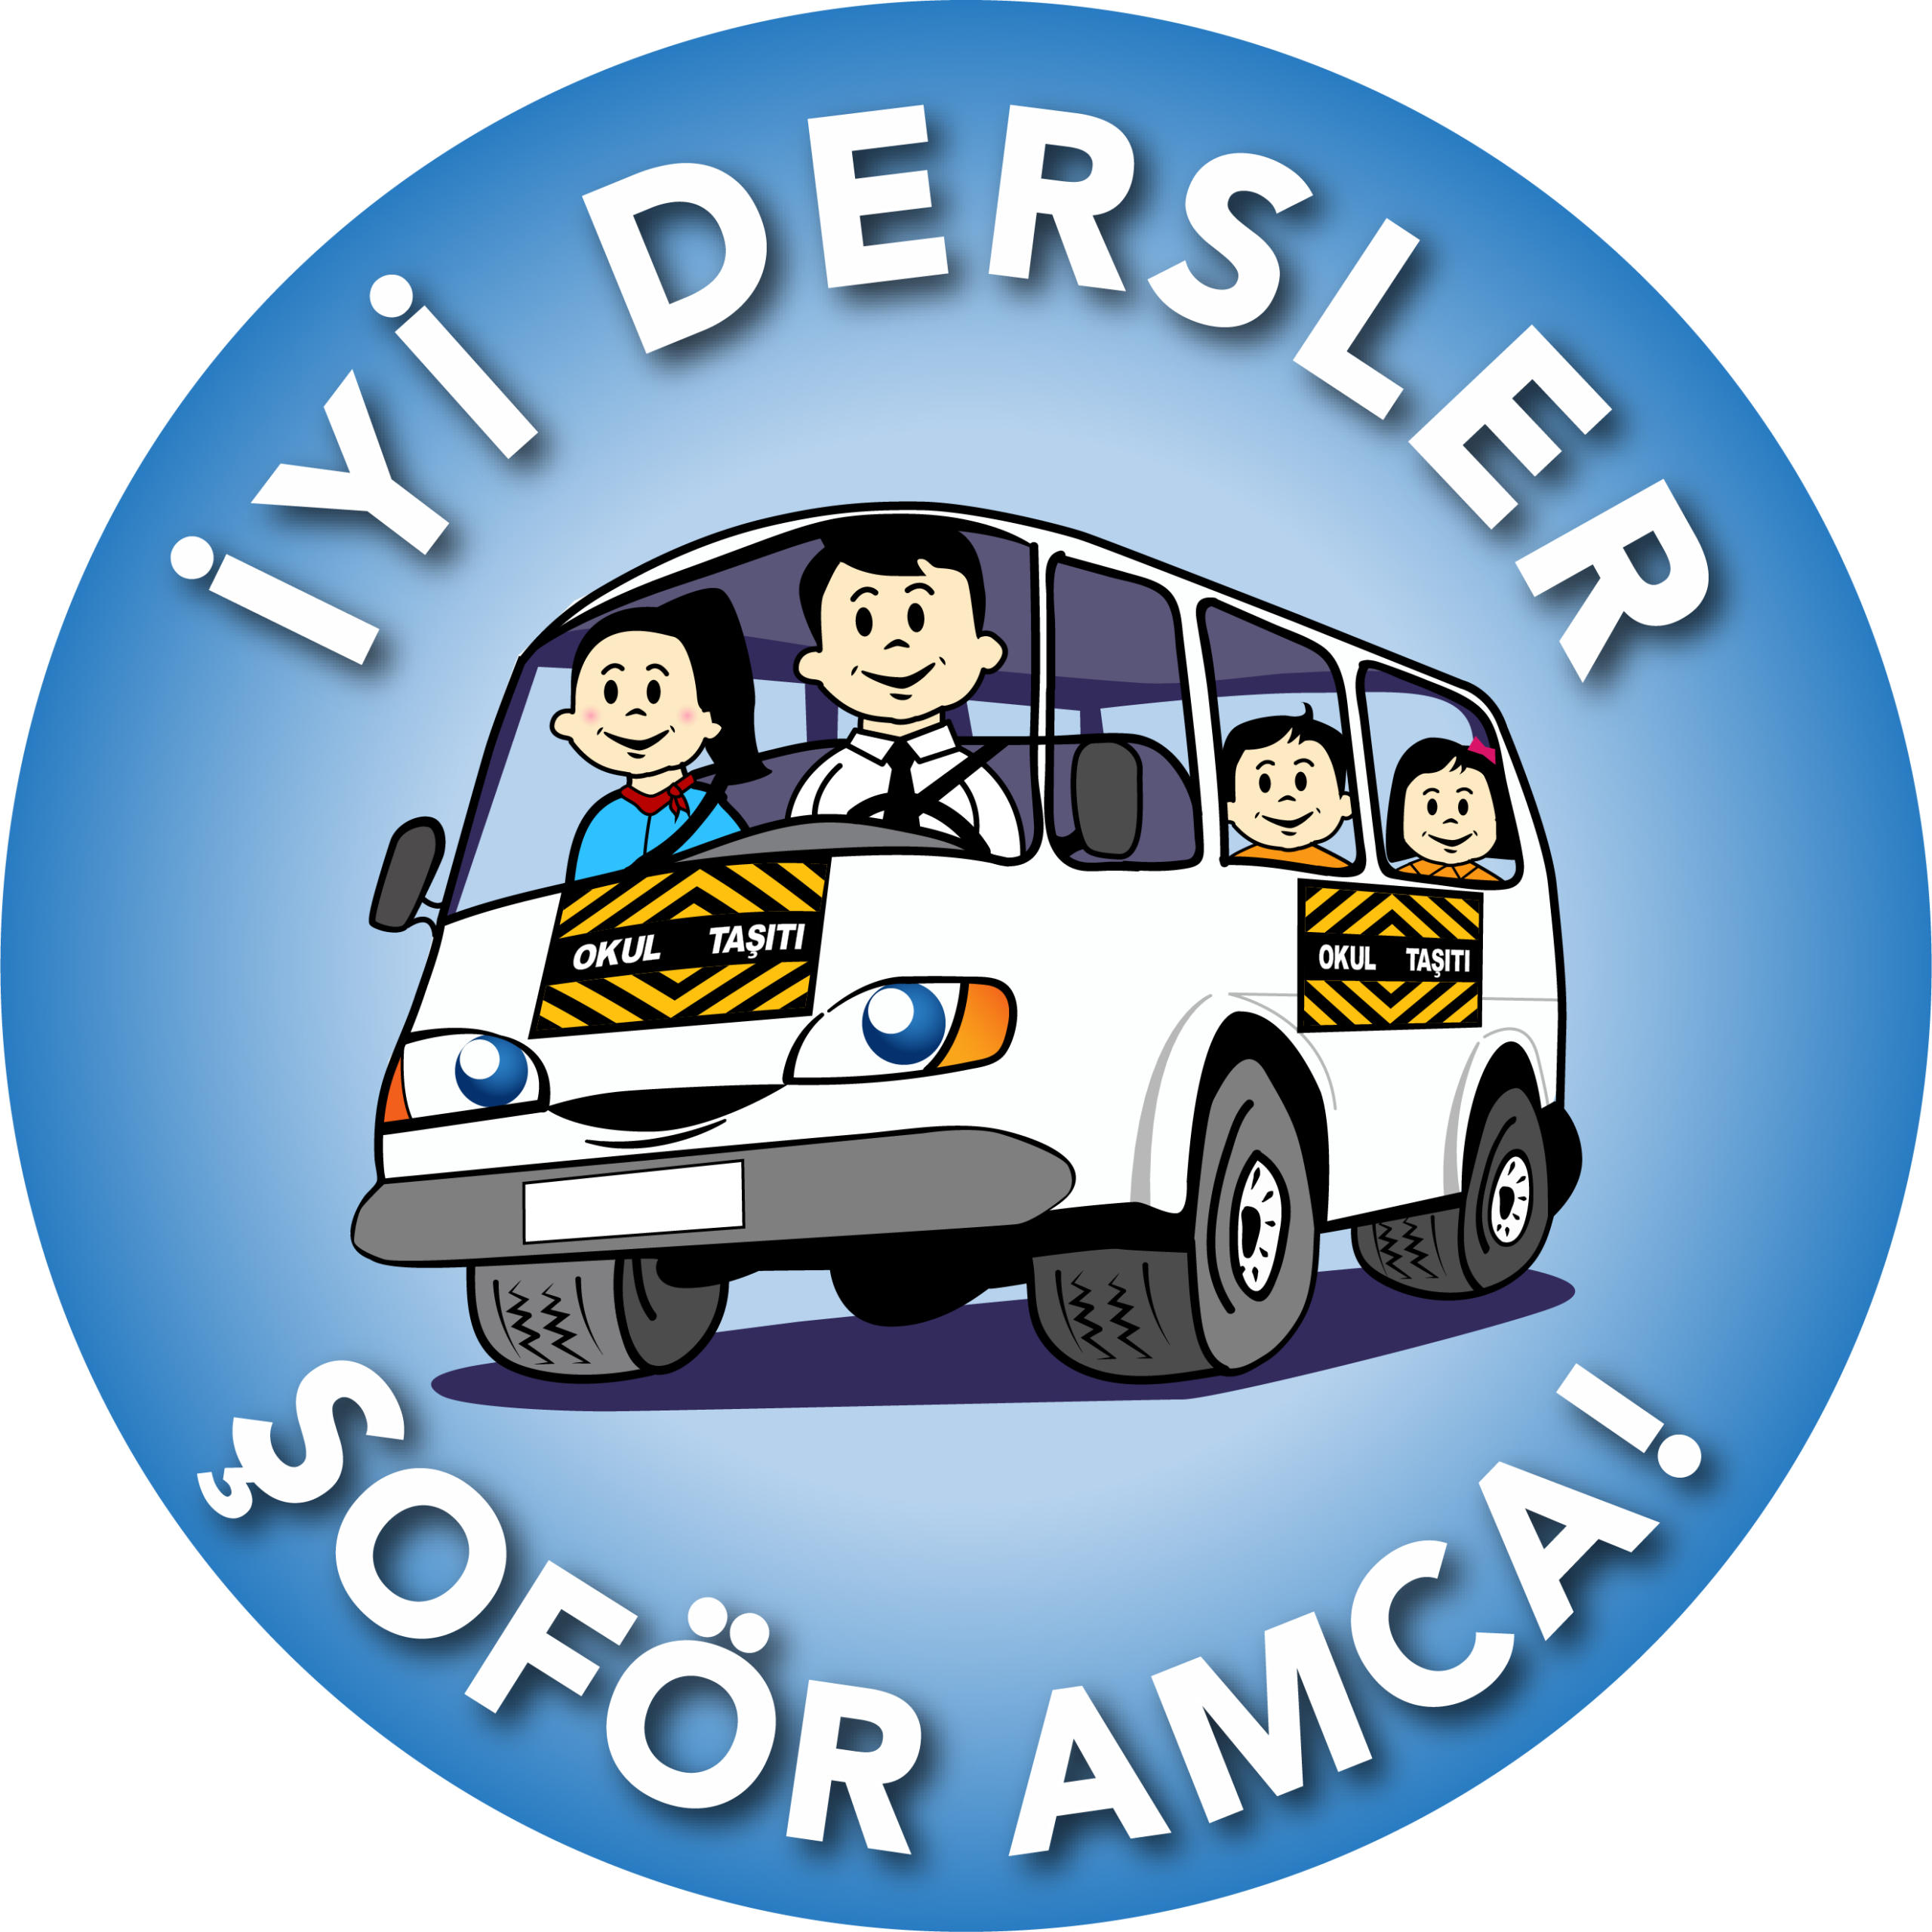 Millî Eğitim Bakanlığı “İyi Dersler Şoför Amca” Projesini destekliyor